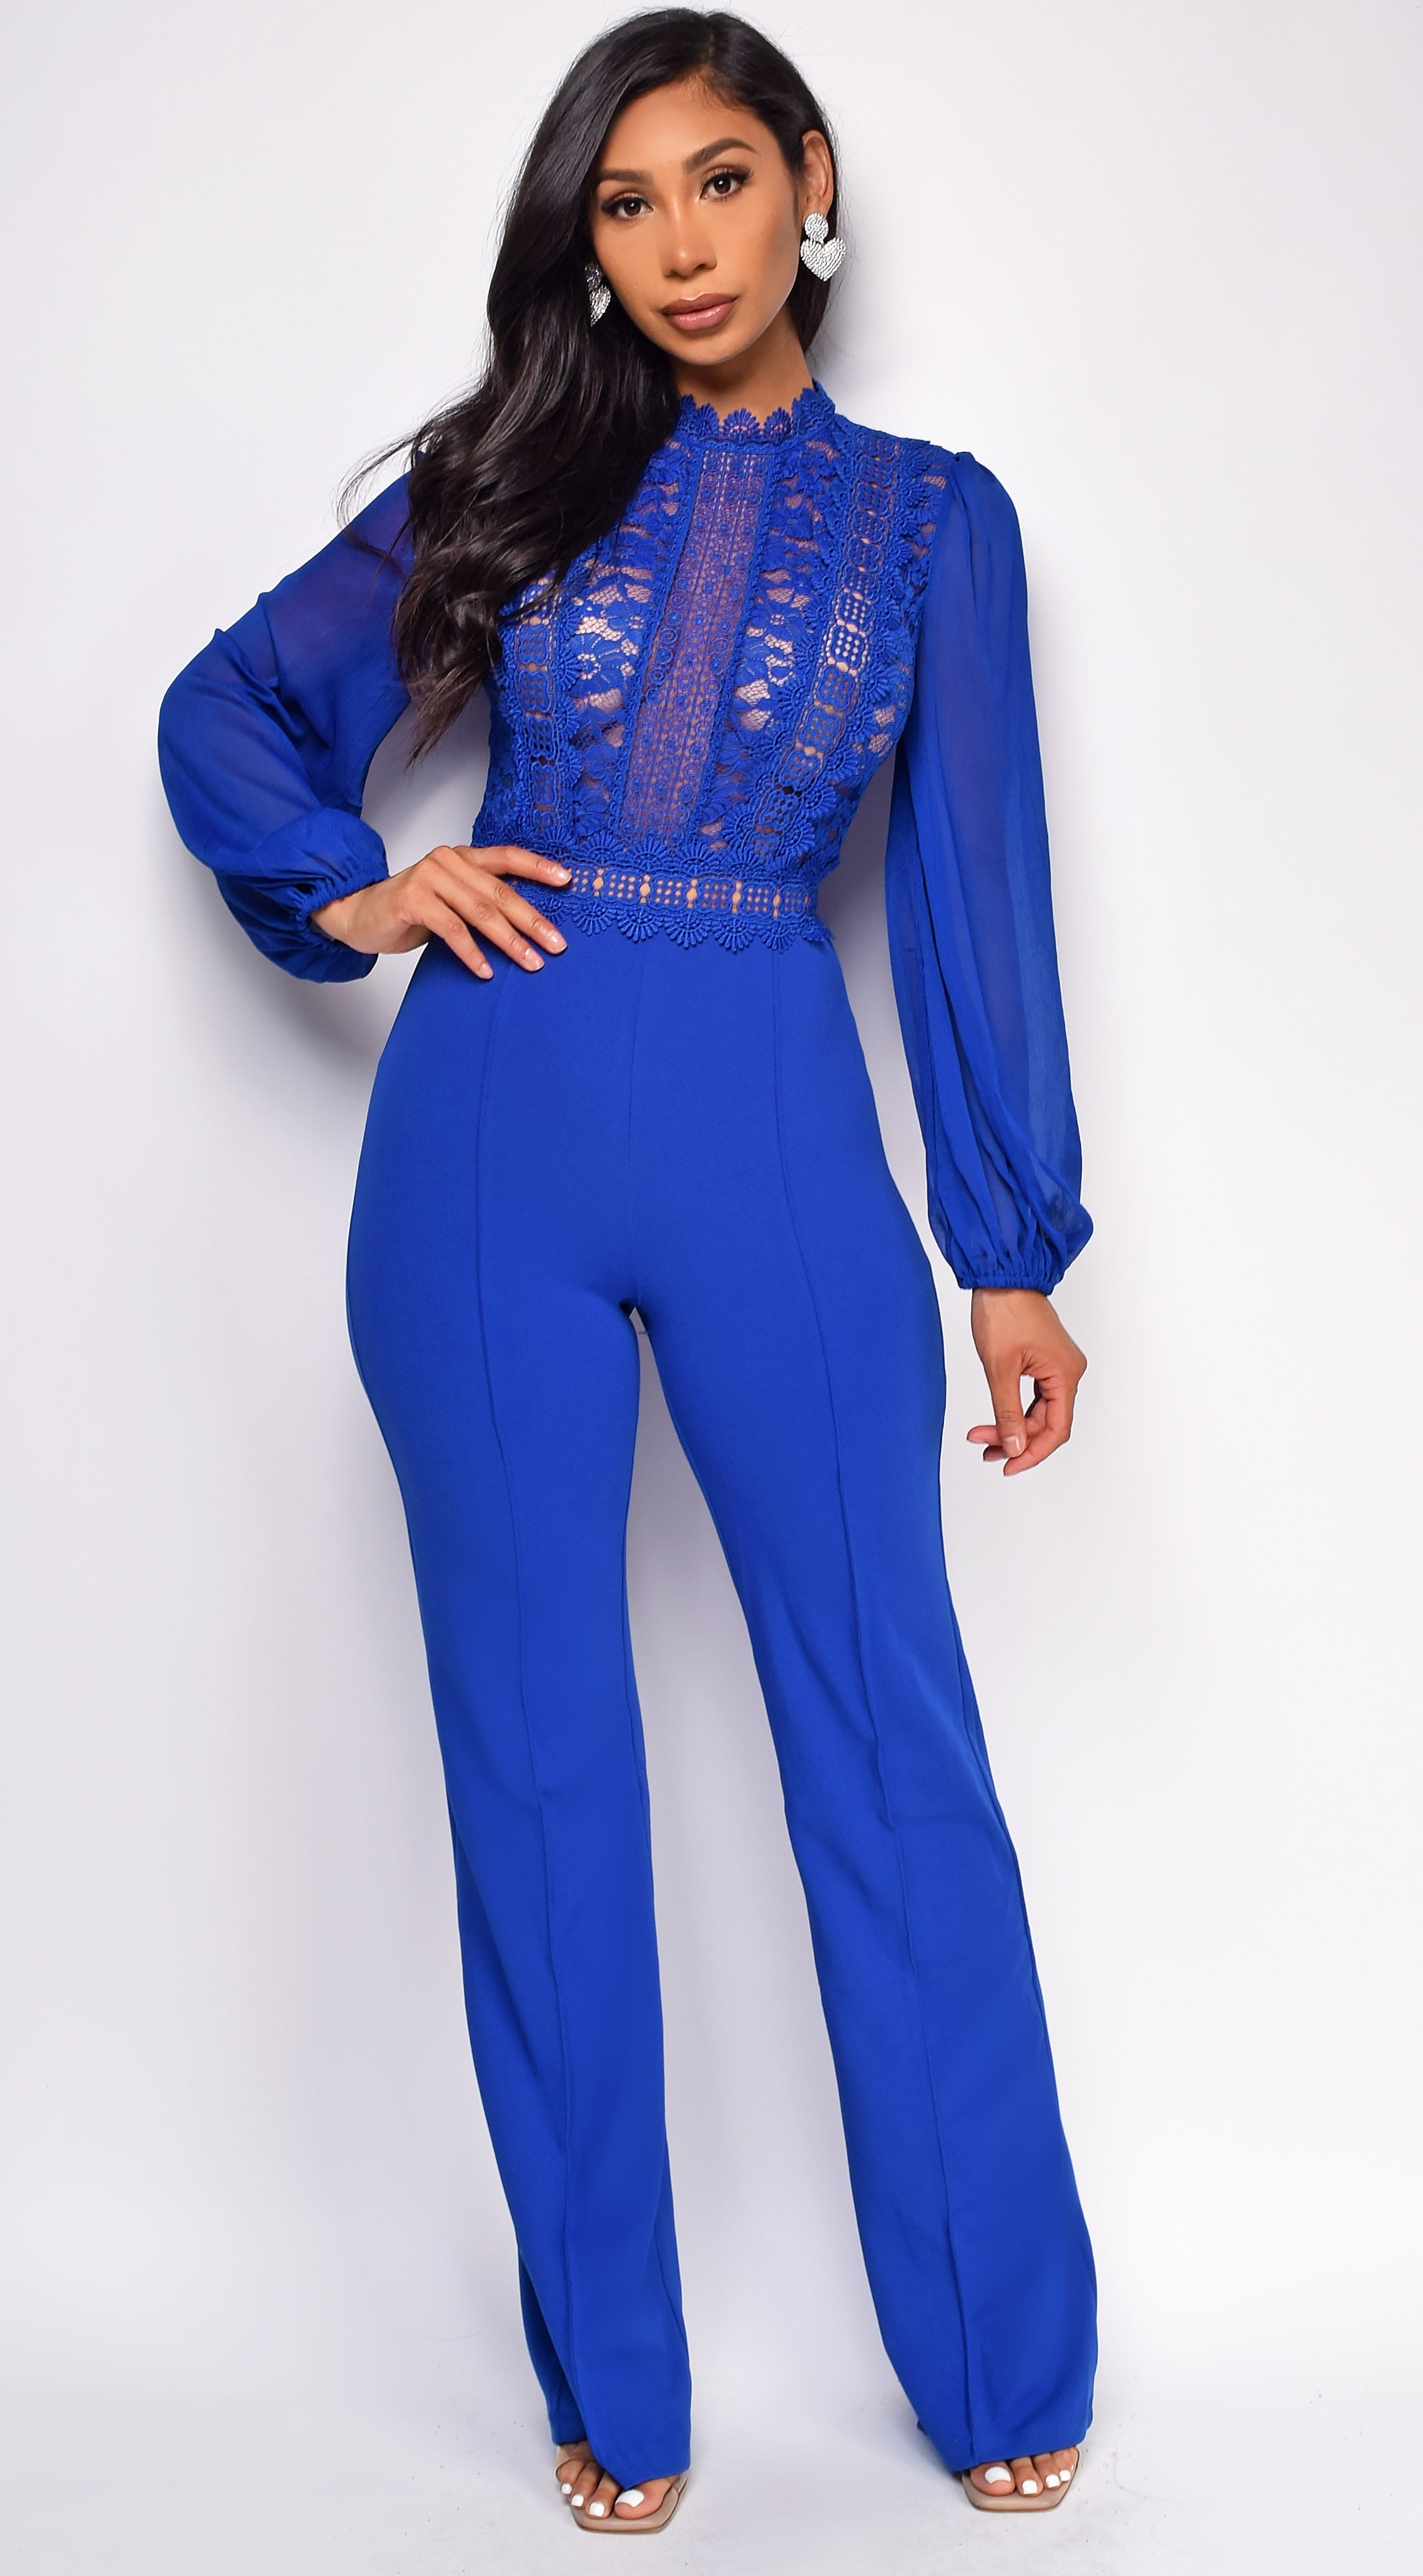 Nerine Royal Blue Lace Jumpsuit